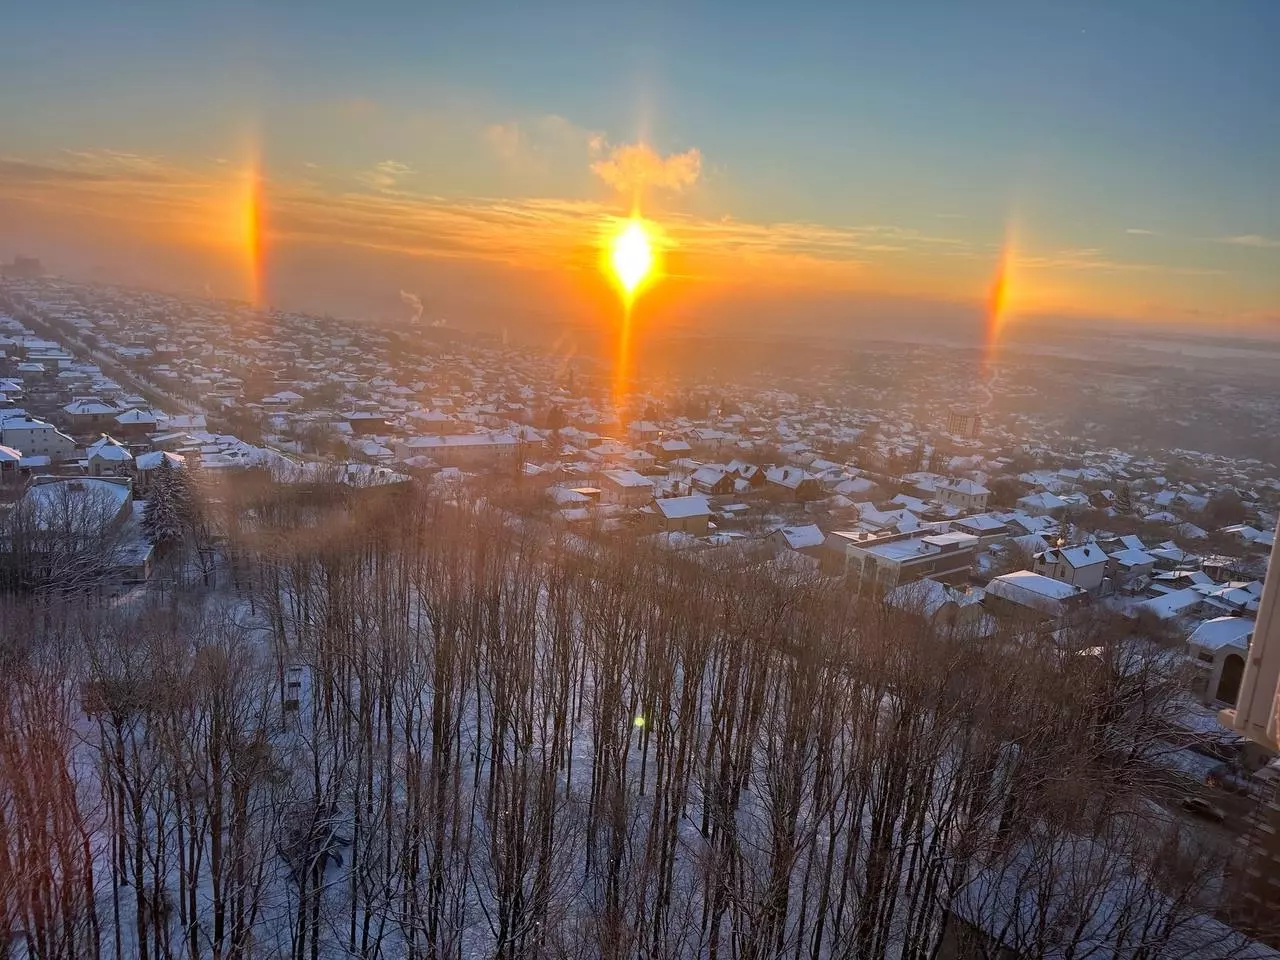 «Волшебное утро»: жителей Ставрополя восхитили три солнца в утреннем небе8